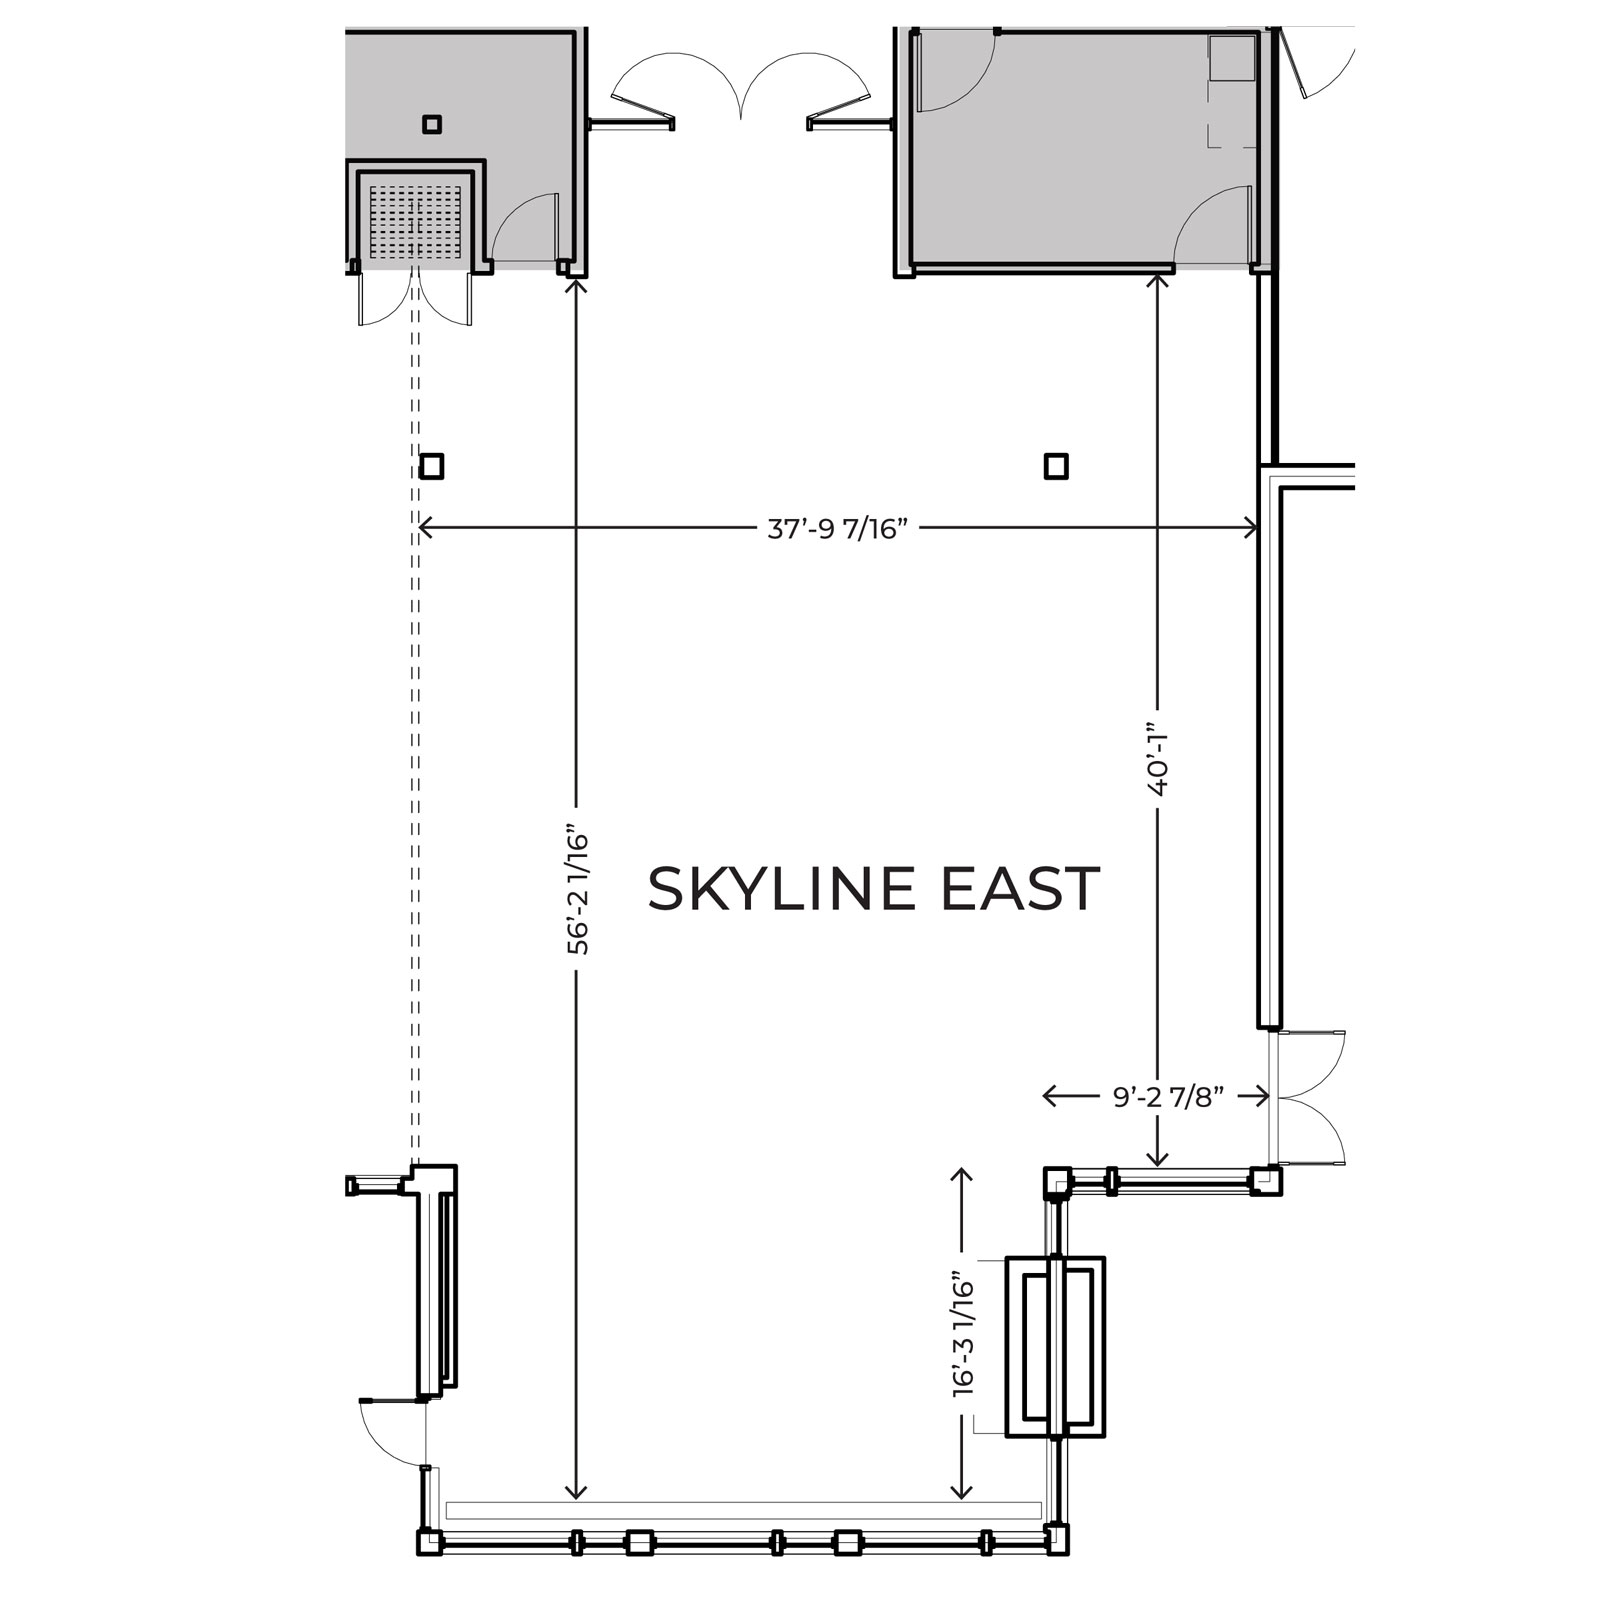 Skyline east floor plans